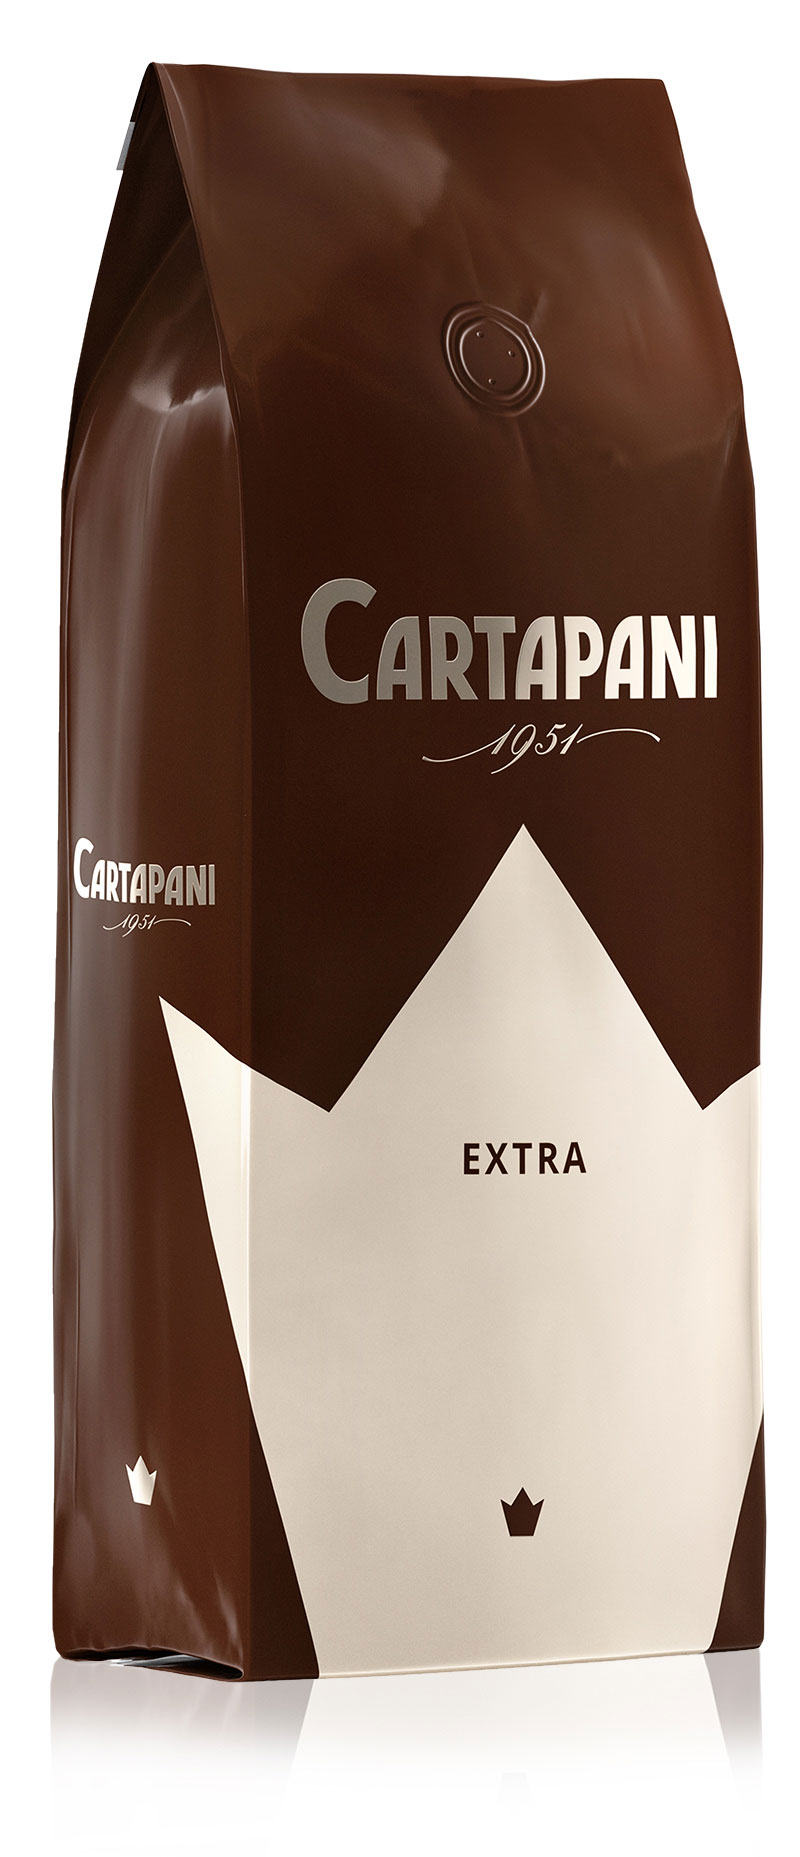 EXTRA - Cartapani